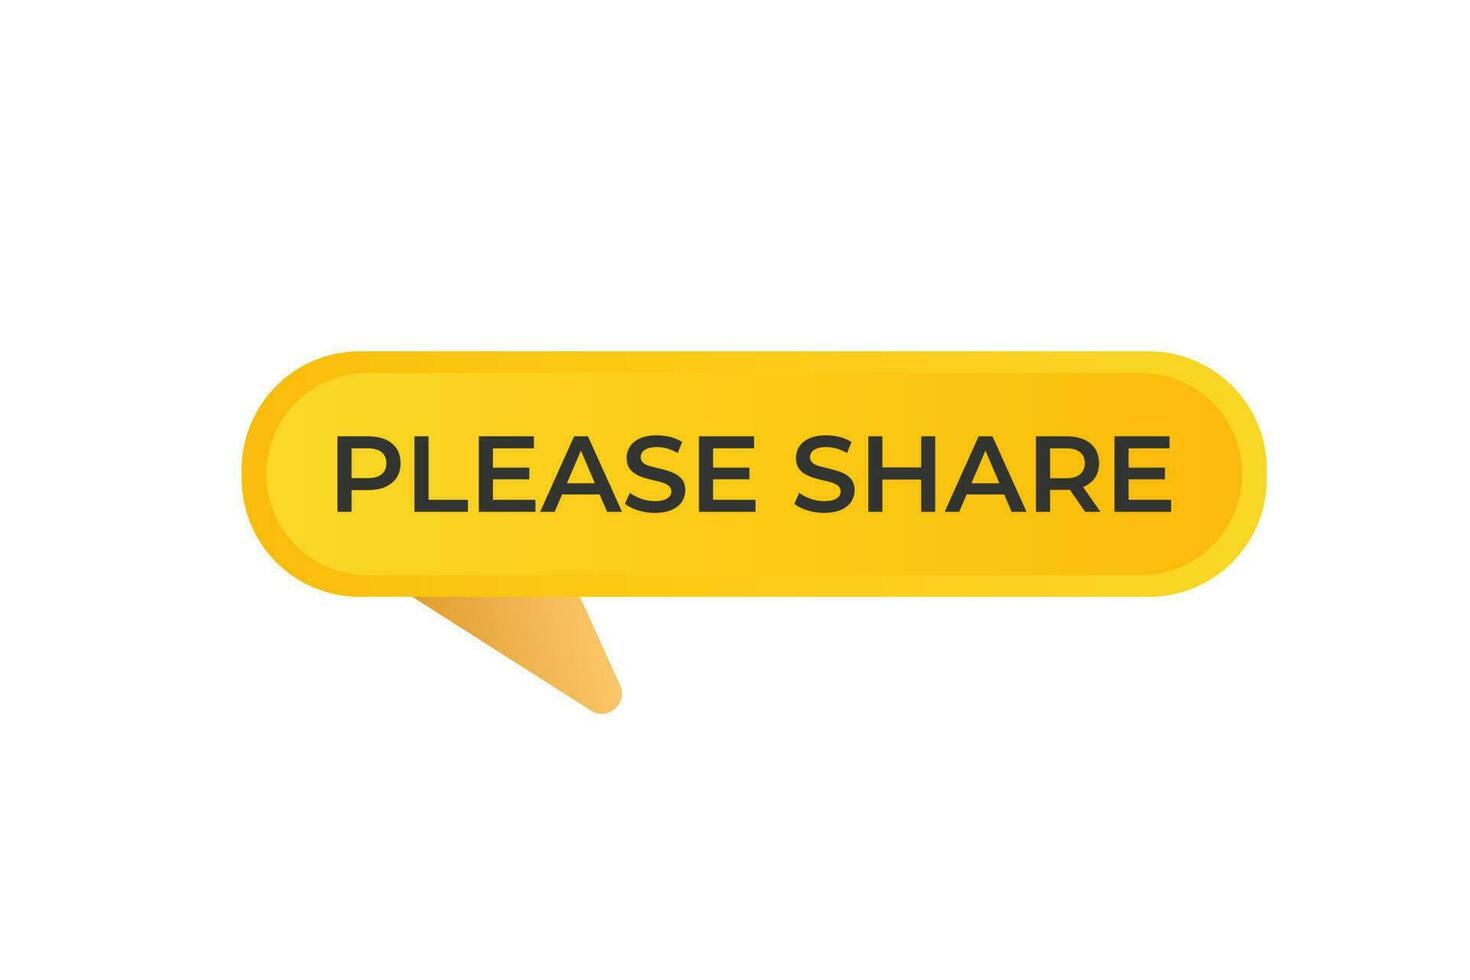 Por favor compartir botón. habla burbuja, bandera etiqueta Por favor compartir vector